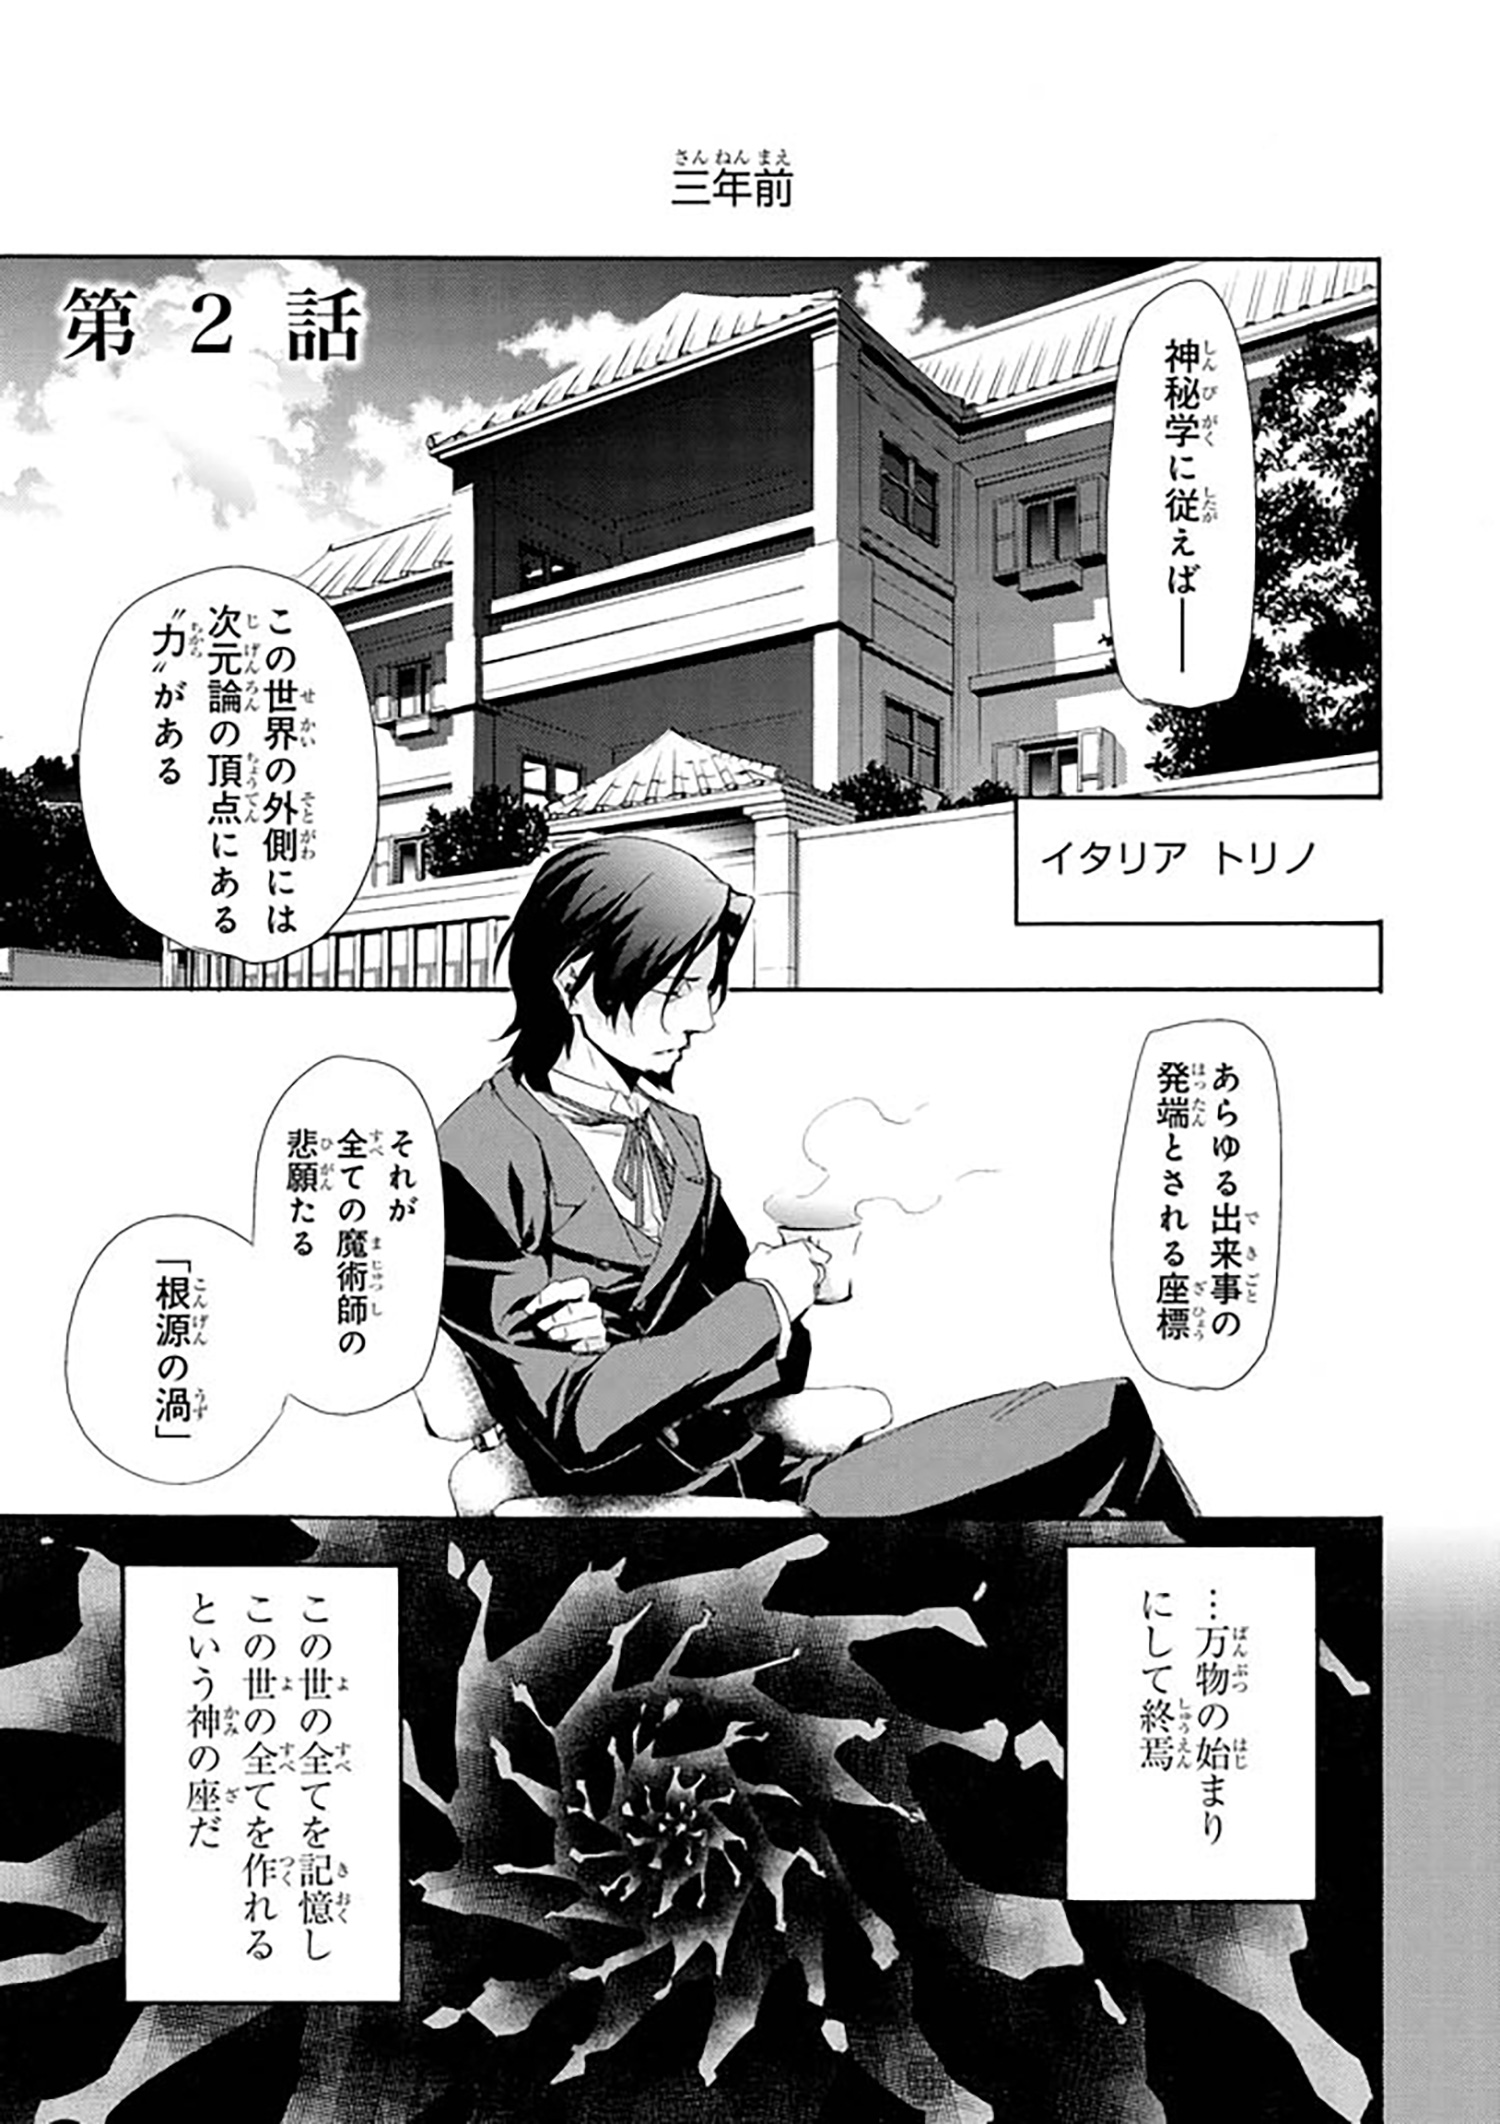 Fate Zero 第2話 Type Moonコミックエース 無料で漫画が読めるオンラインマガジン